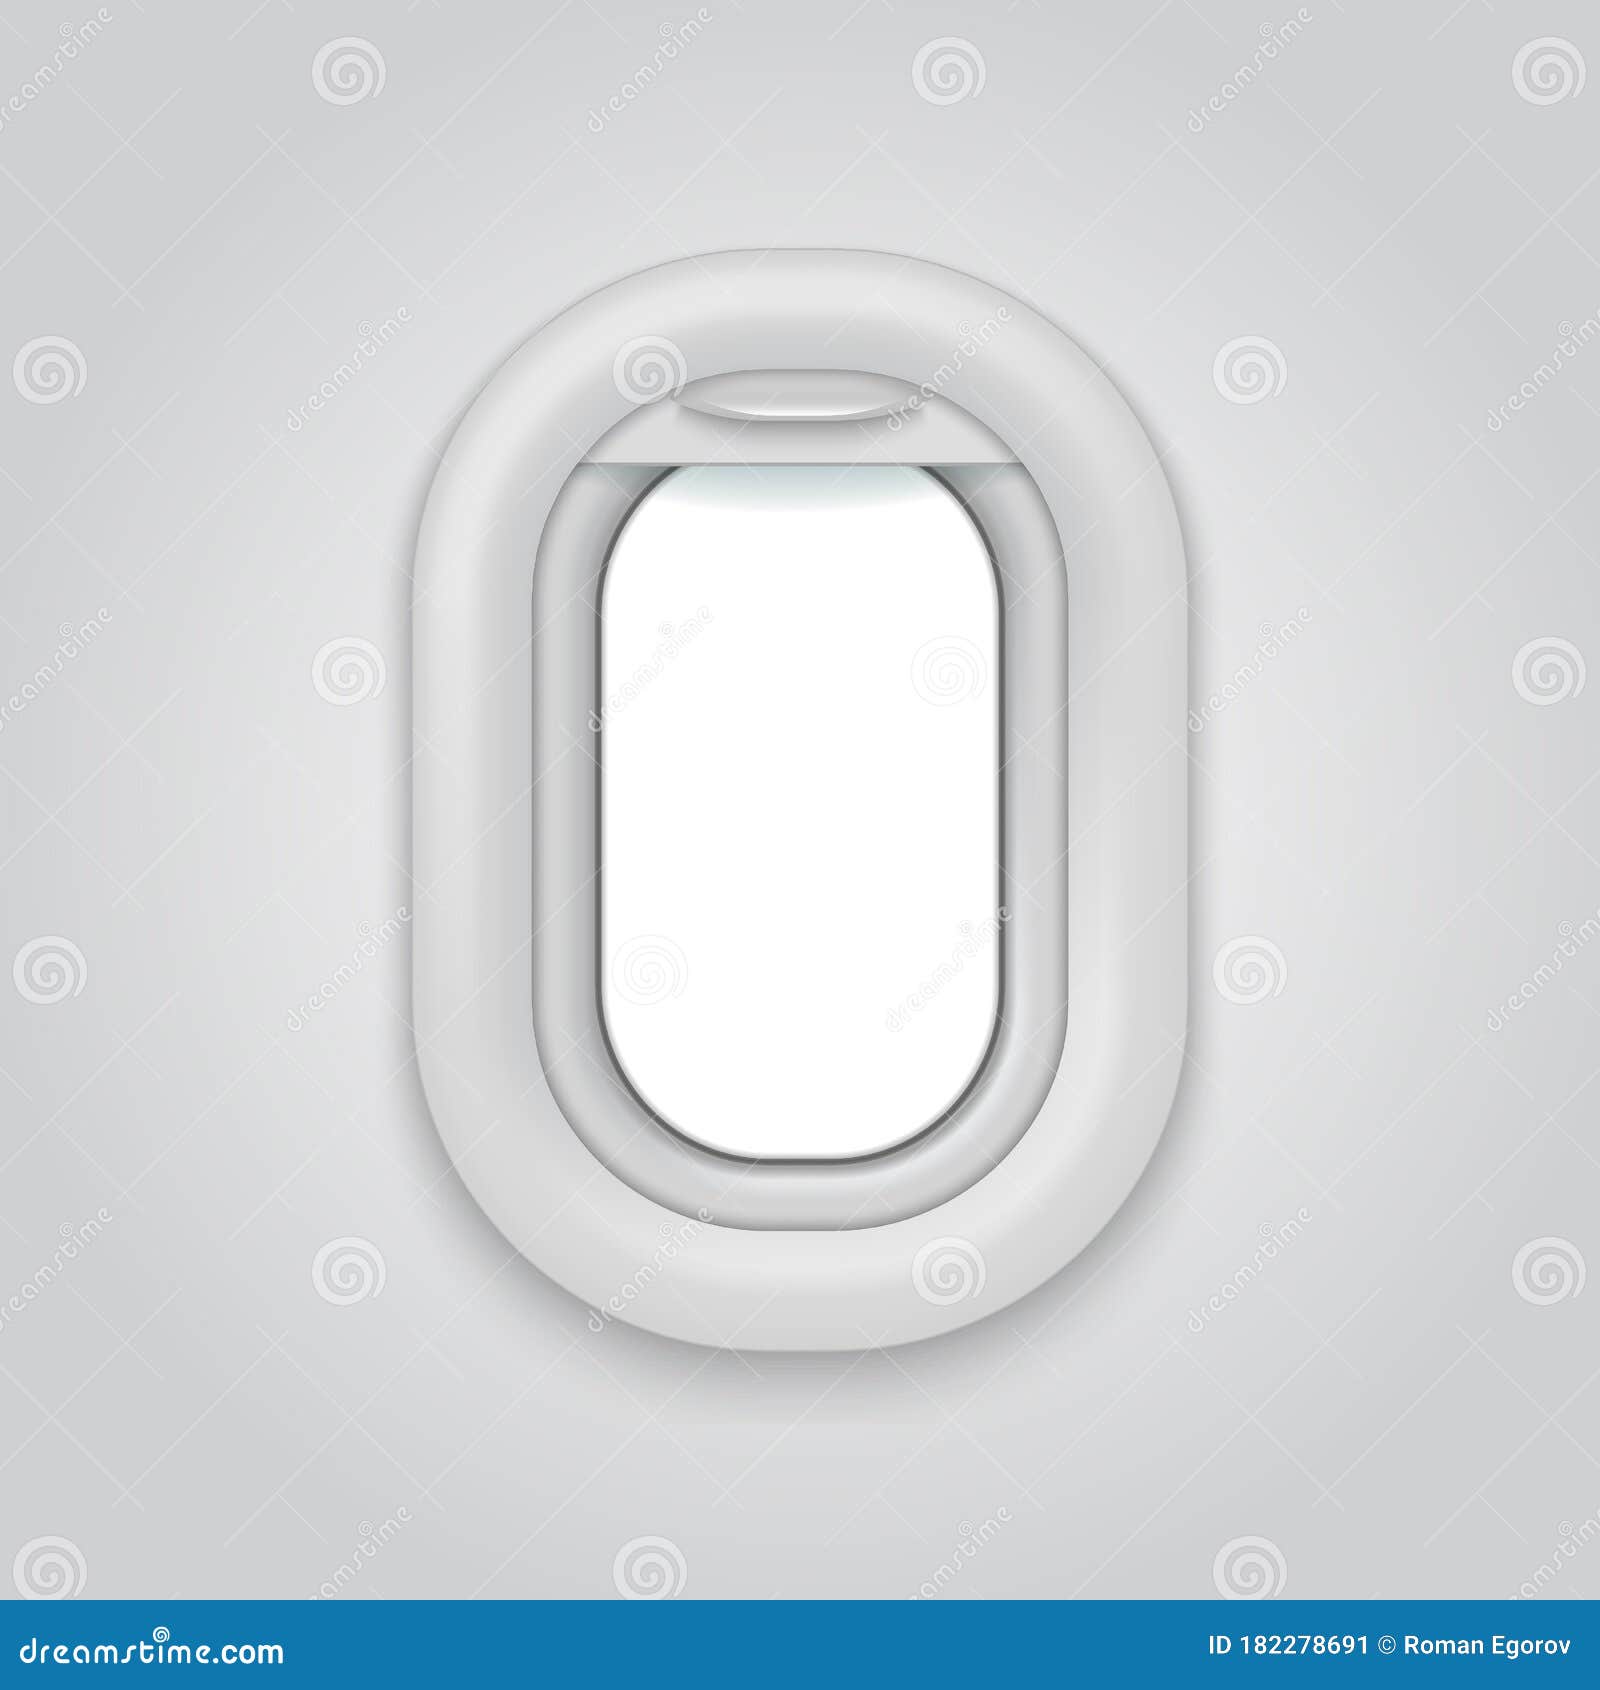 aircraft window. airplane realictic  open illuminator. plane porthole mockup